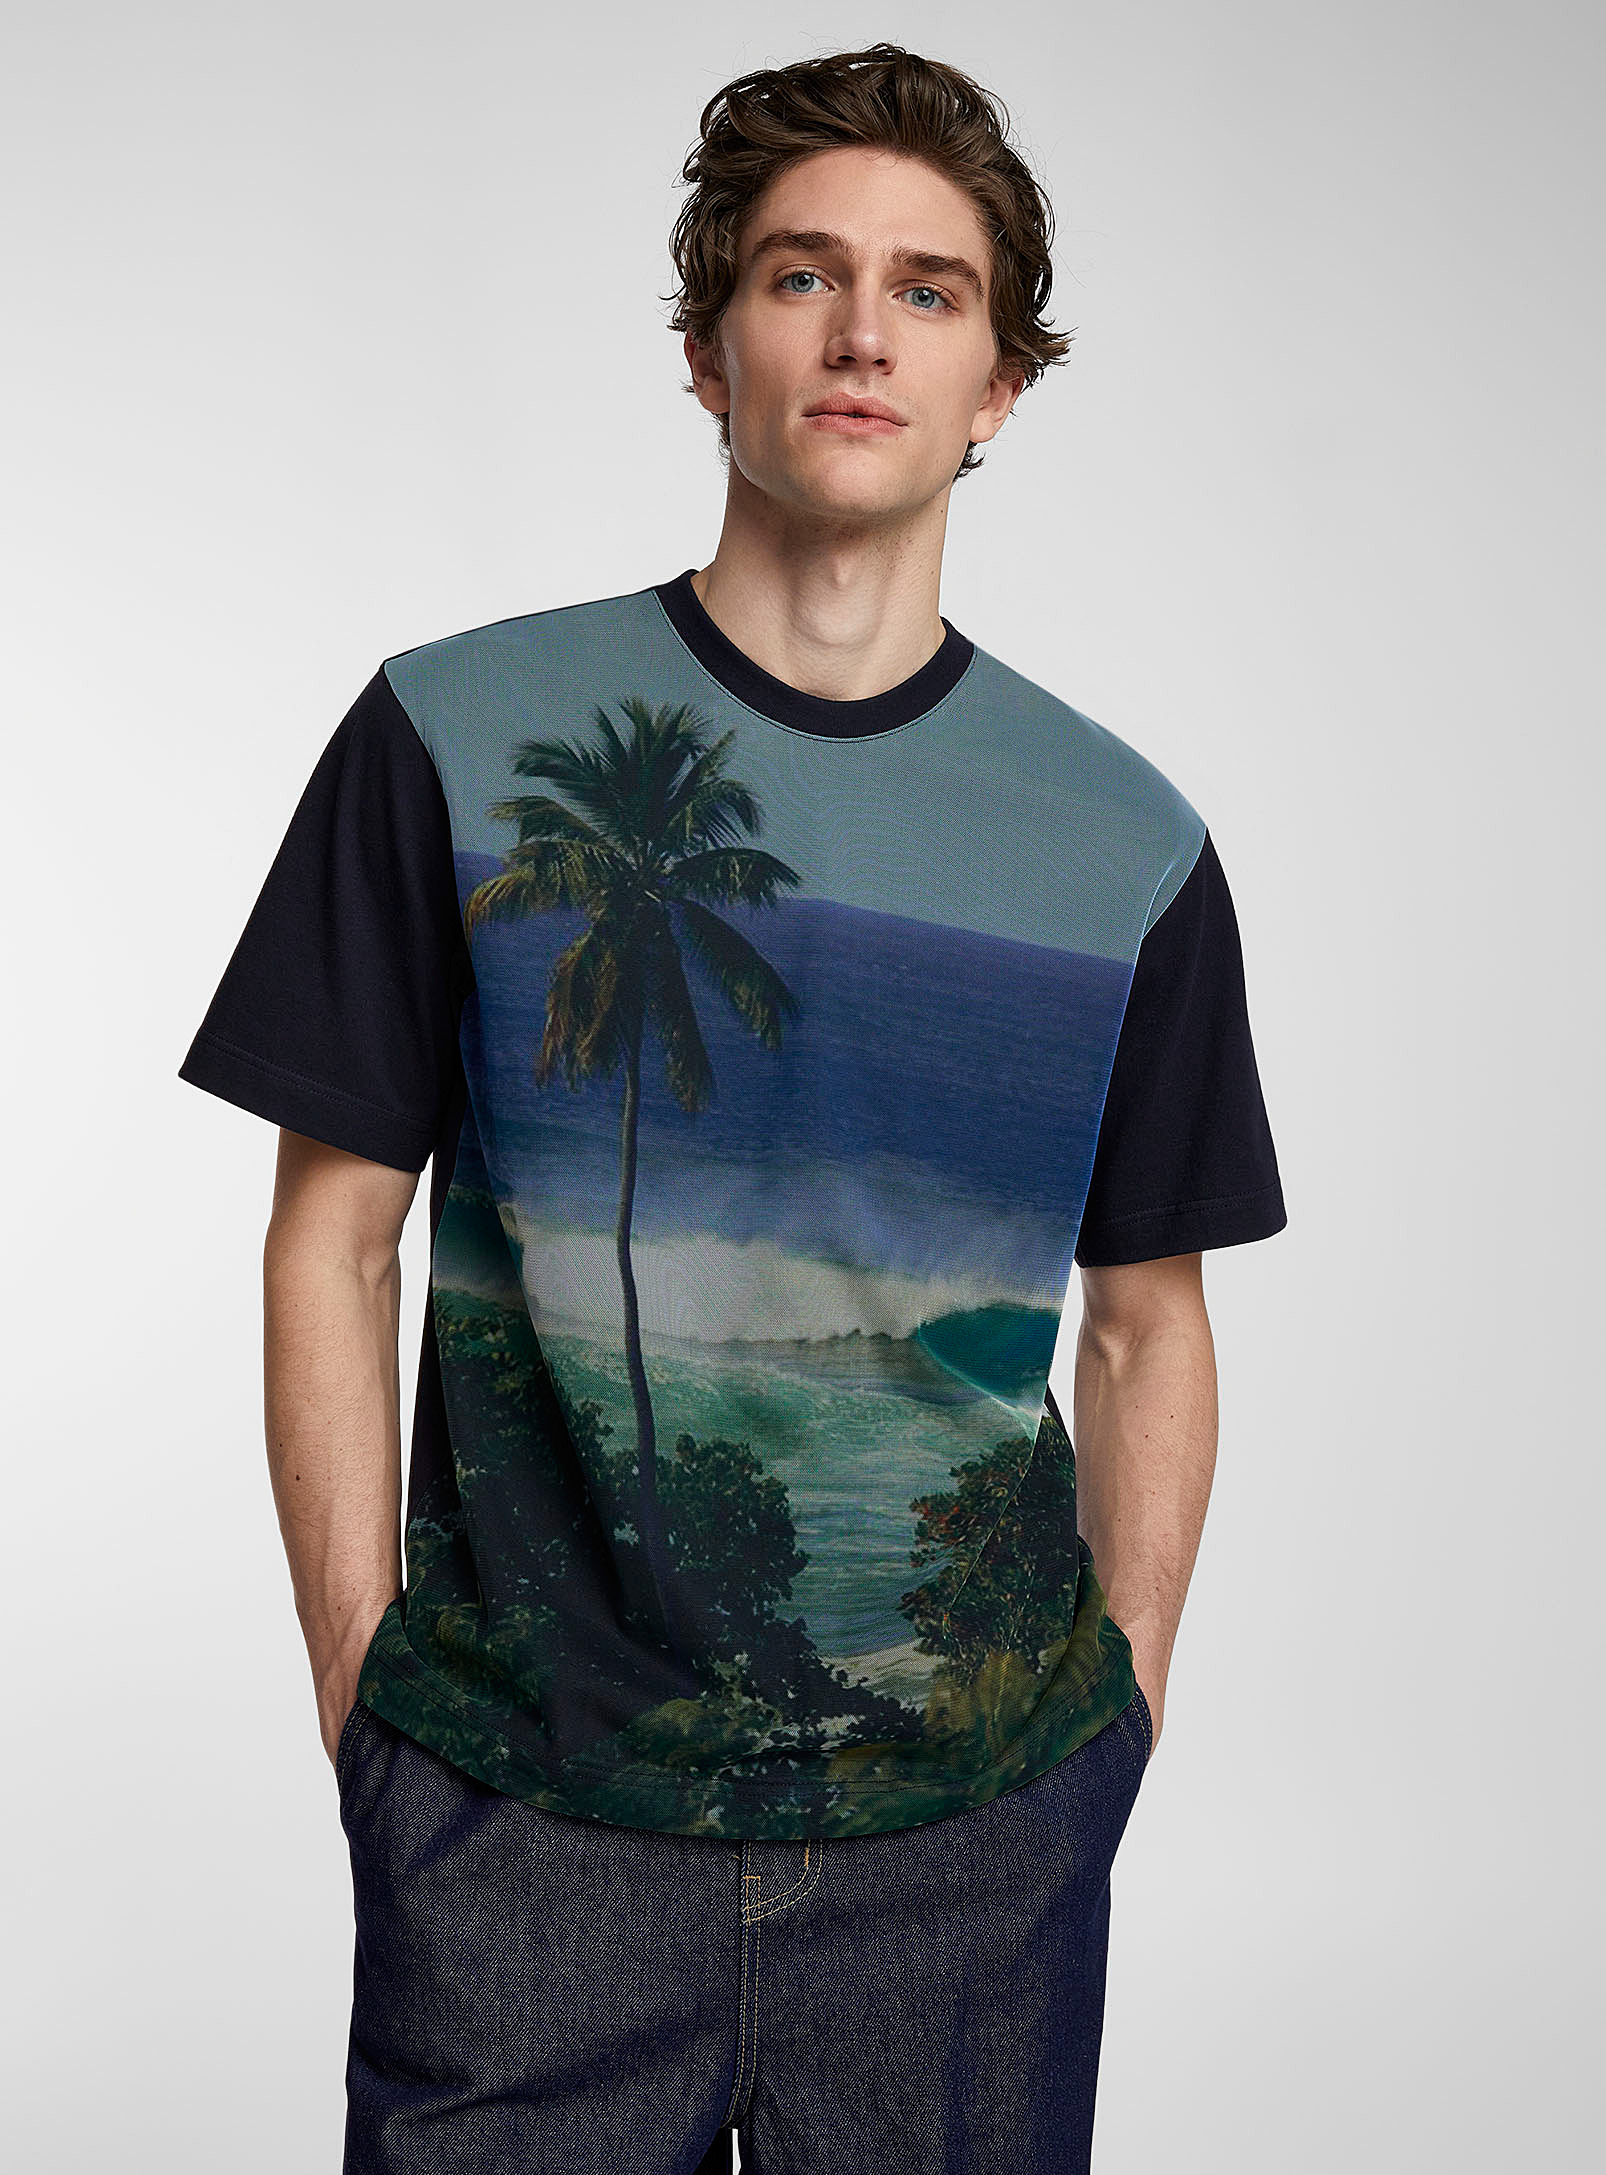 AFTER PRAY - Le t-shirt filet imprimé tropical